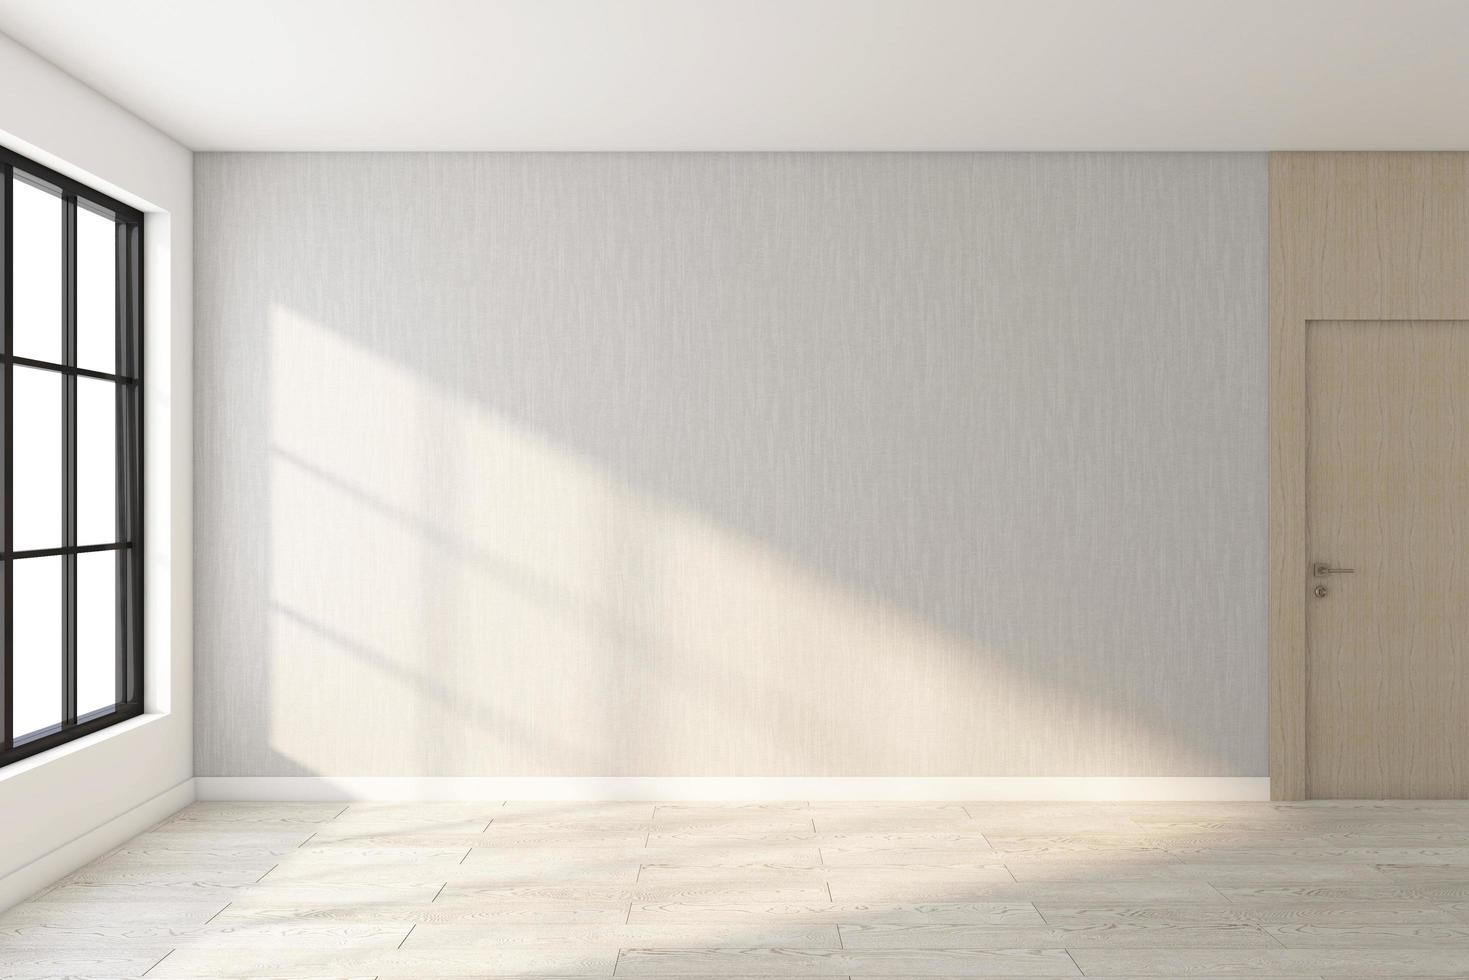 quarto vazio minimalista com parede cinza e piso de madeira. renderização em 3D foto